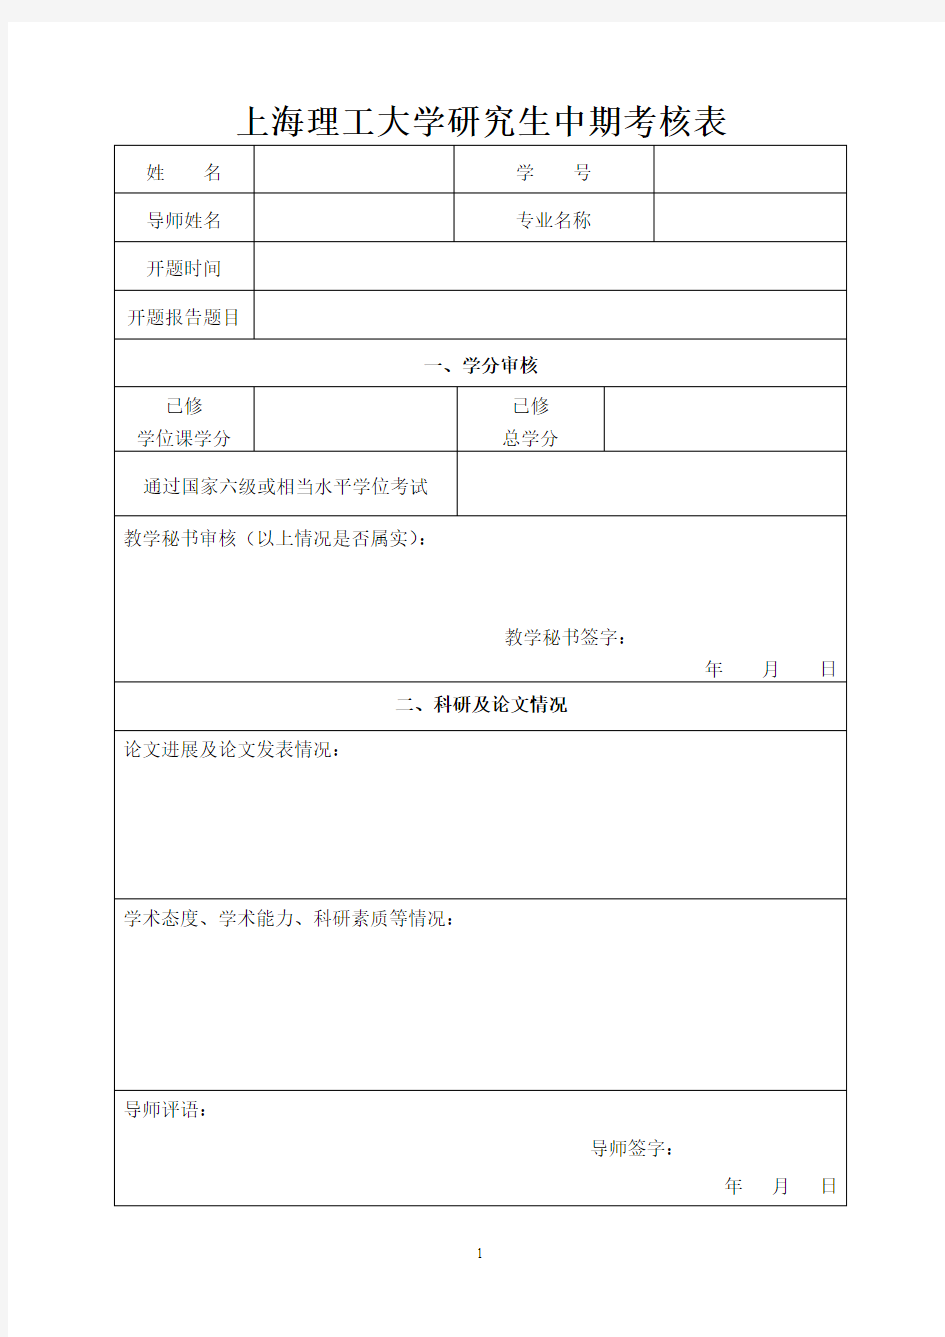 上海理工大学研究生中期考核表